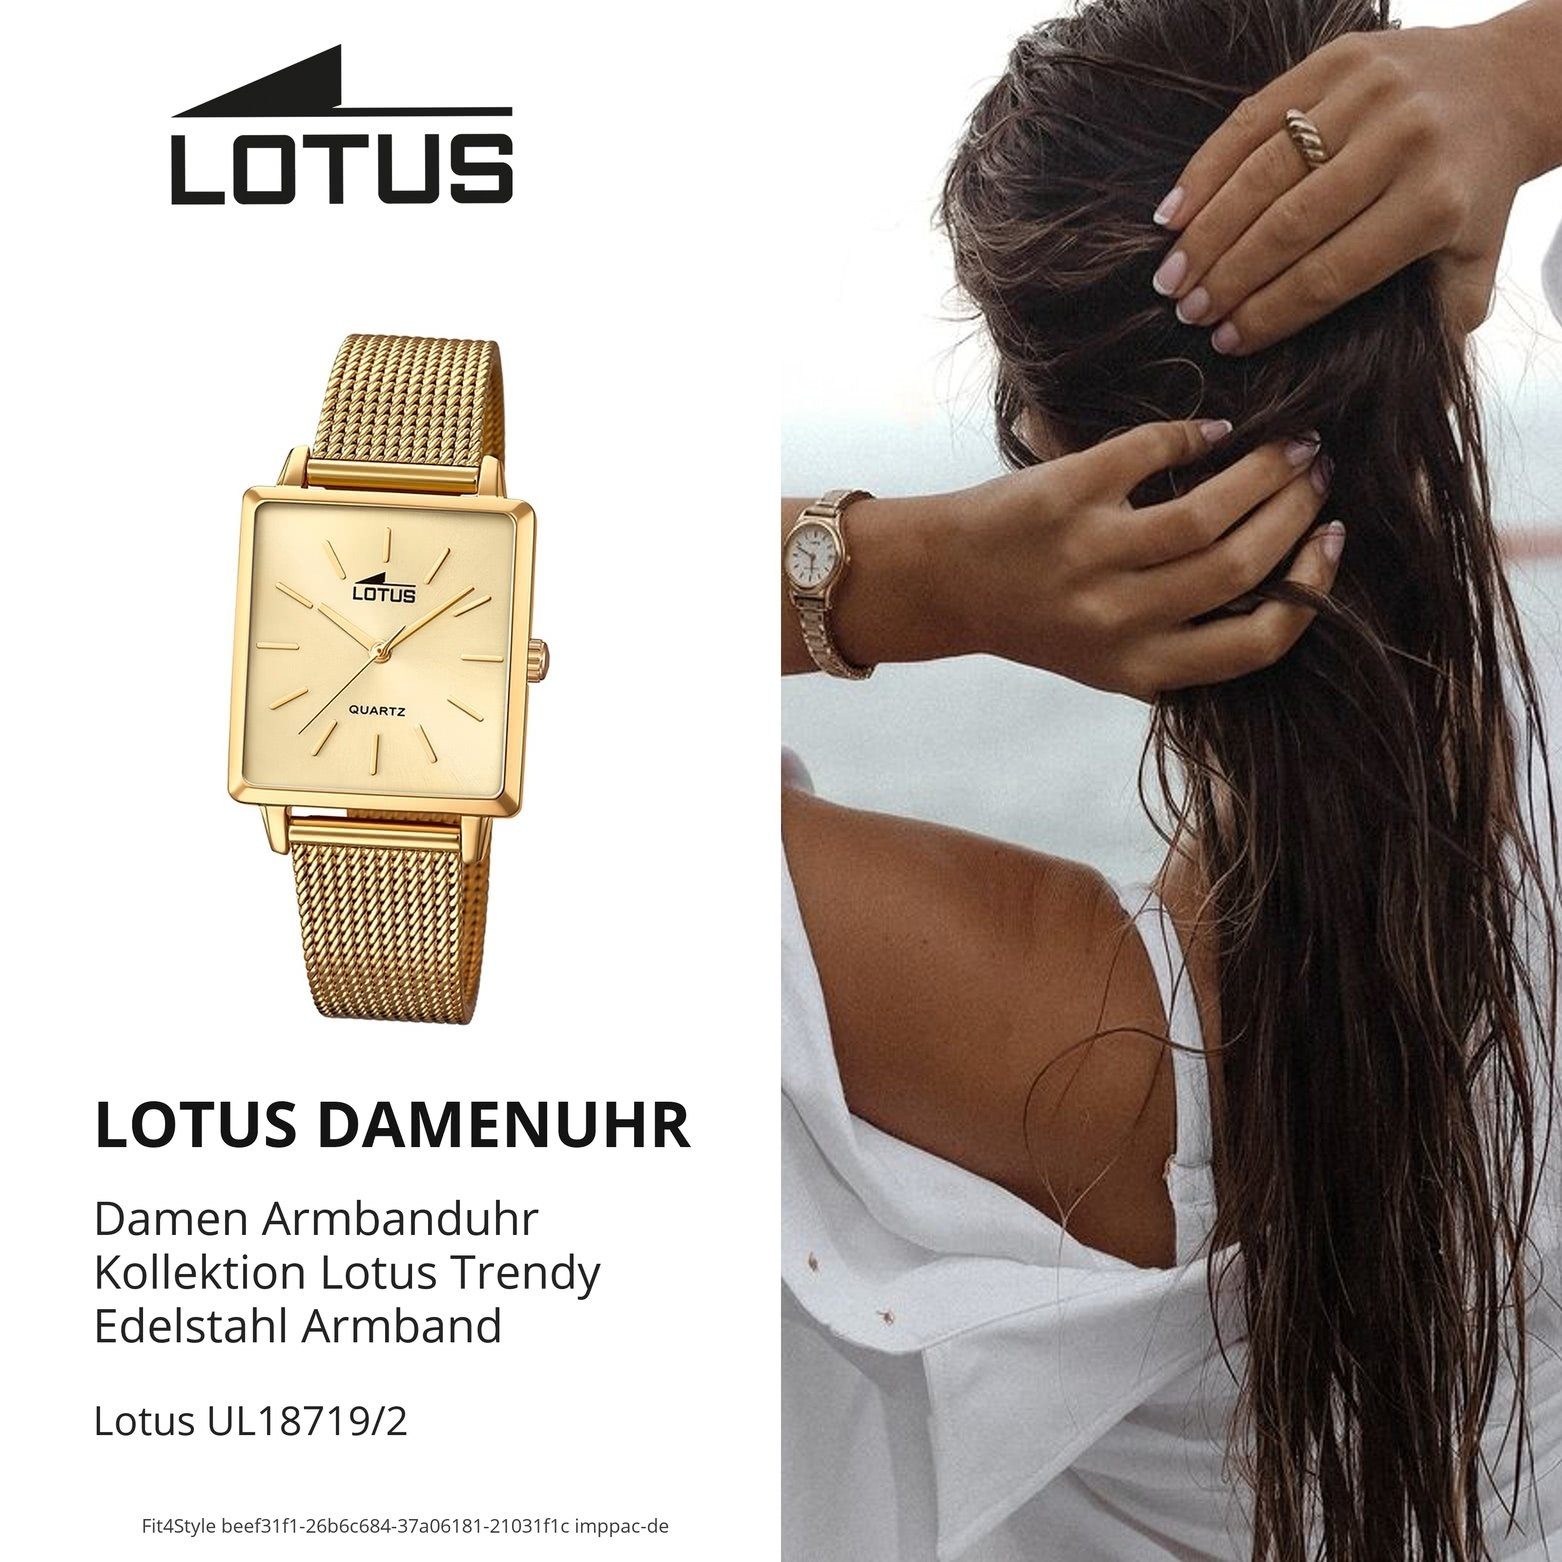 eckig, (ca. Fashion Lotus LOTUS 27mm) Edelstahlarmband klein Damen gold Damenuhr Quarzuhr 18719/2, Uhr